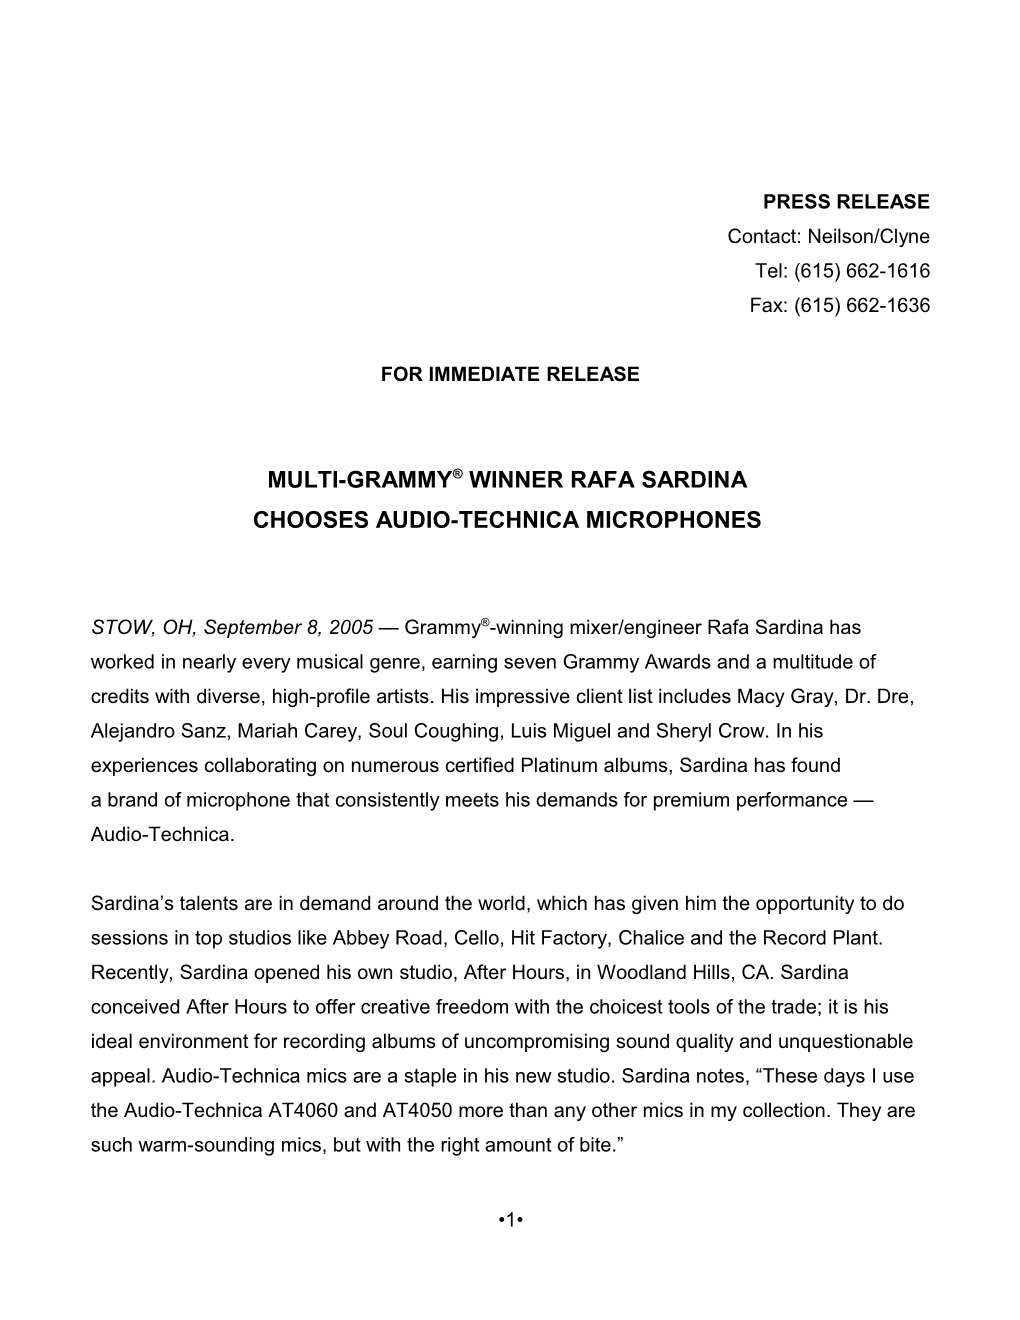 Multi-Grammy Winner Rafa Sardina